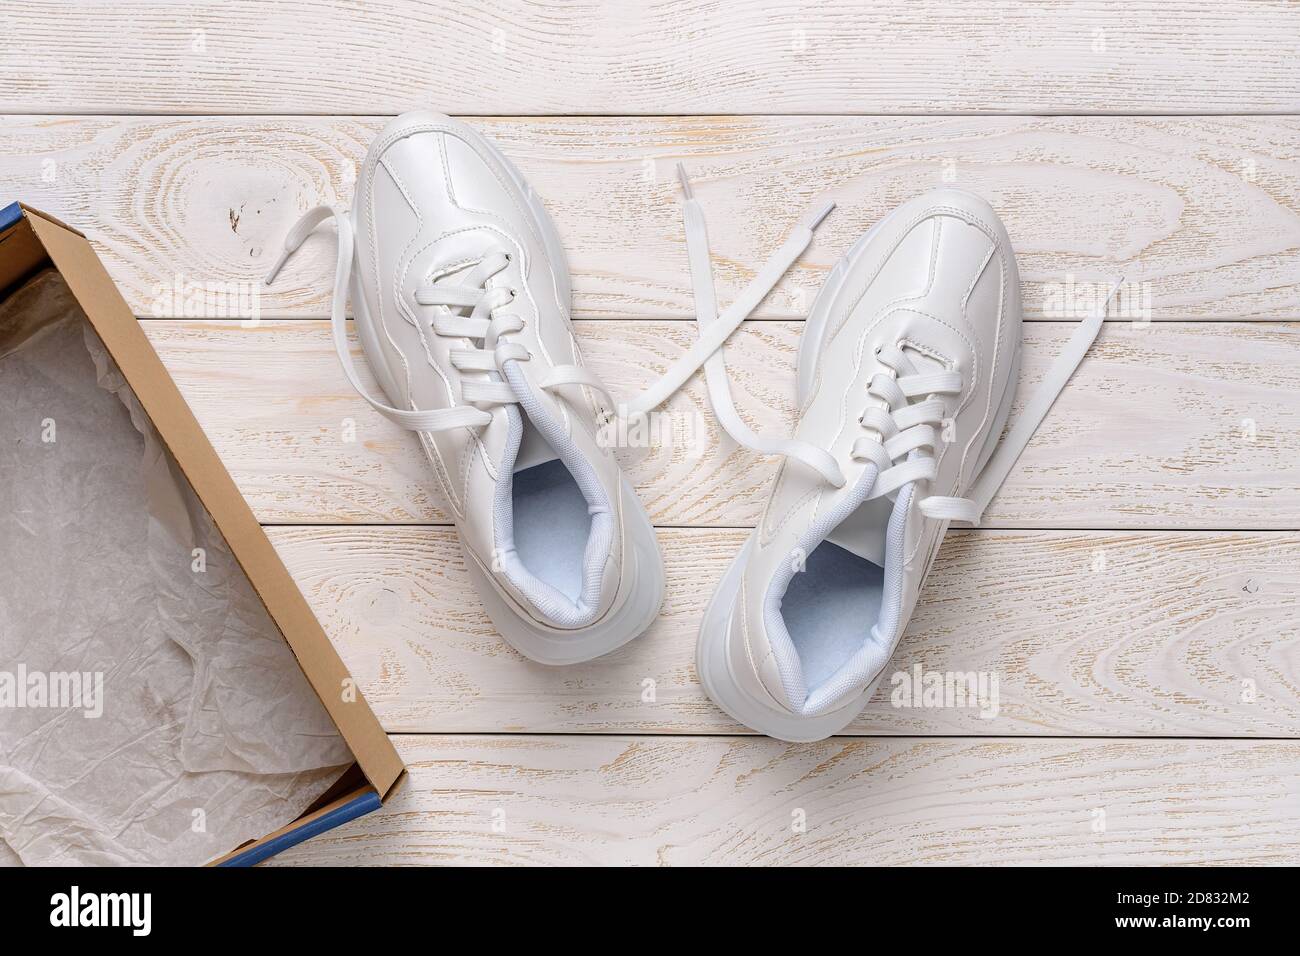 Paire de sneakers à grosse semelle blanche près d'une boîte en carton  marron sur un sol en bois blanc. Boîte ouverte avec de nouvelles chaussures  confortables pour un style de vie actif